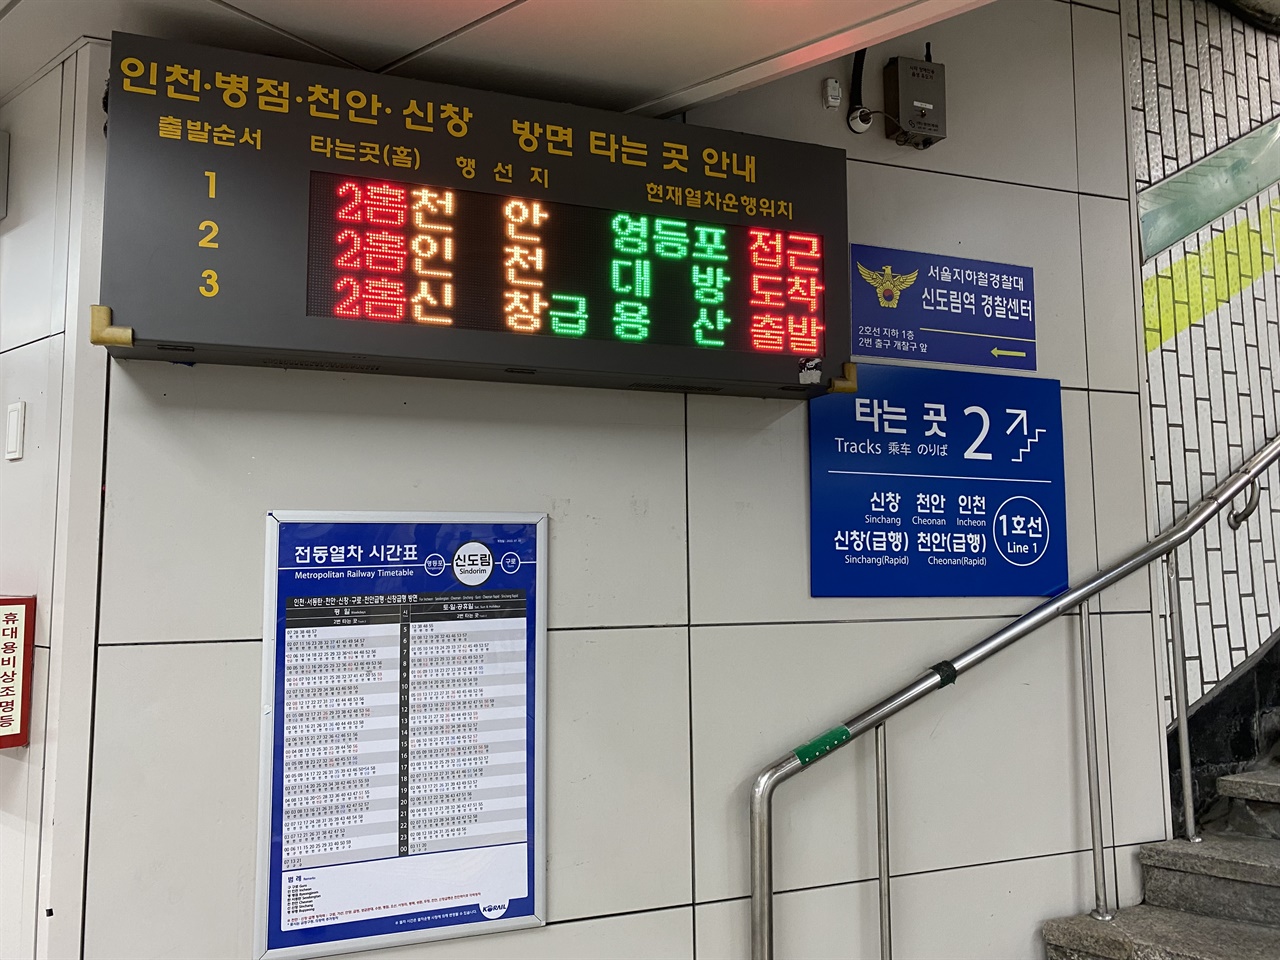 신도림역 탑승구 앞에 부착되어 있는 디지털/인쇄식 열차 시간표